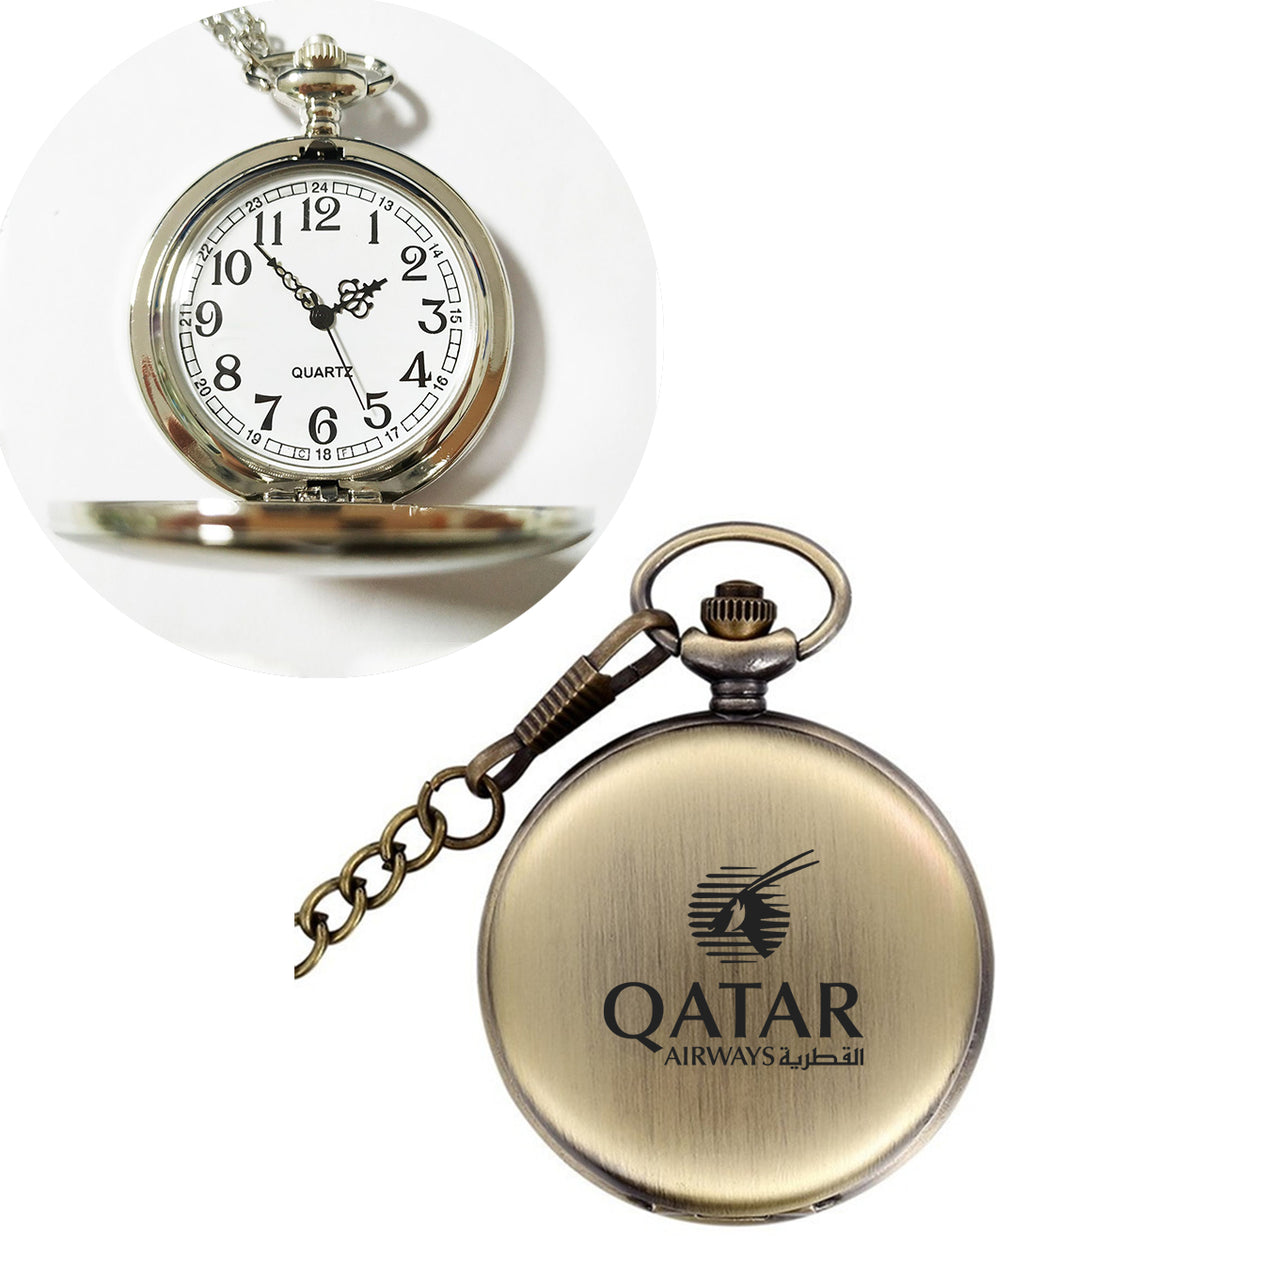 Qatar Airways Airlines Designed Pocket Watches